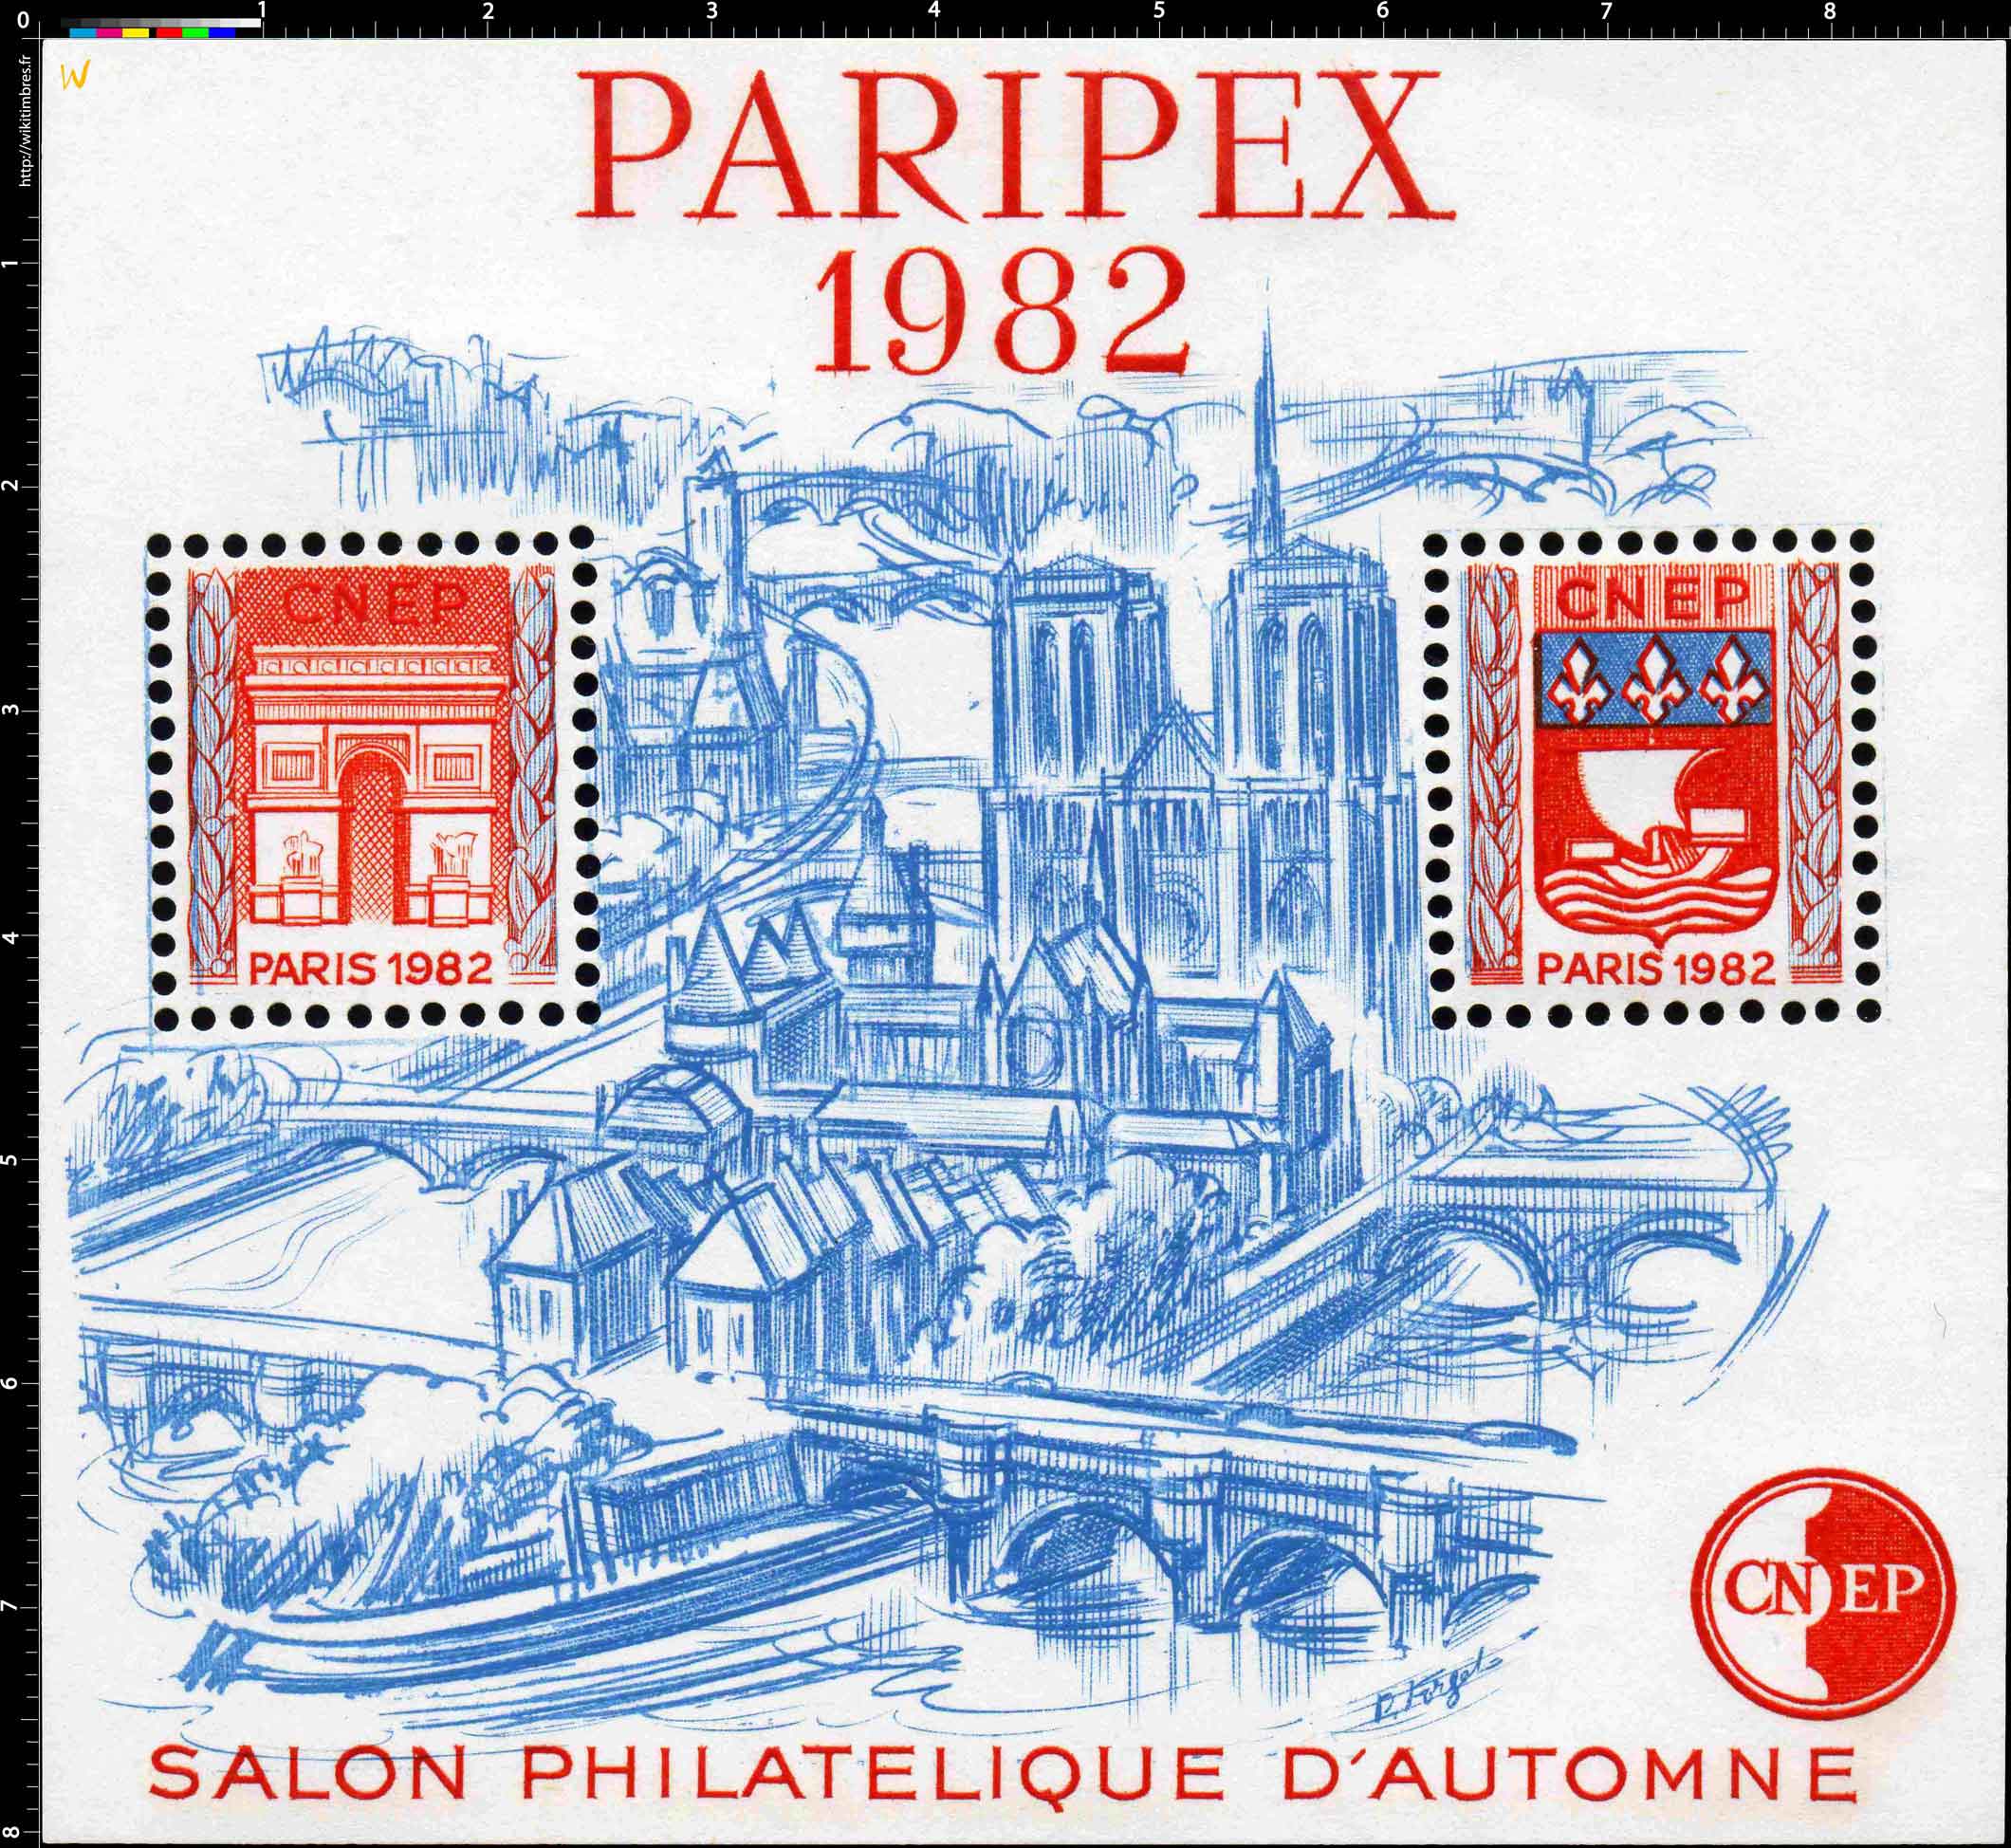 1982 Paripex Salon philatélique d'automne CNEP